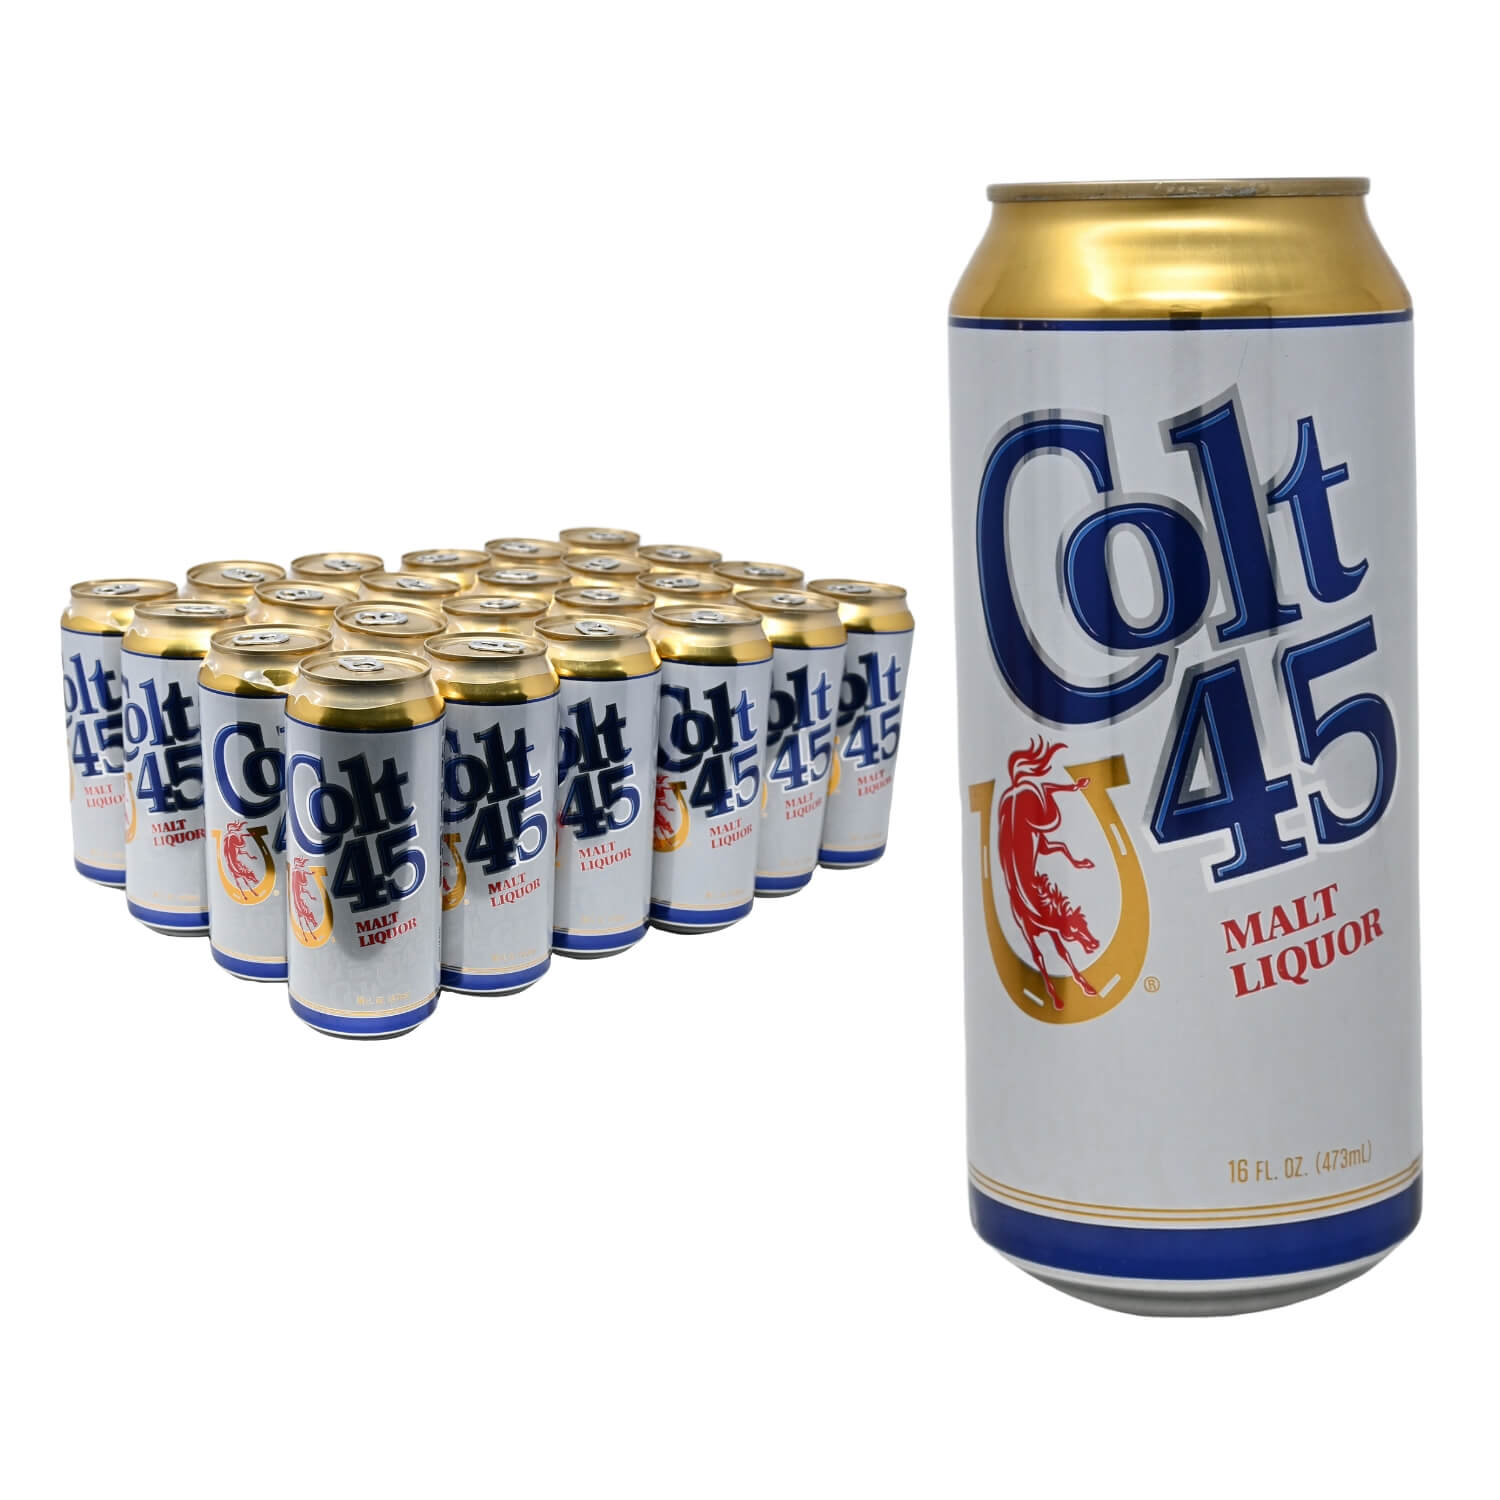 COLT 45  Stone's Beer & Beverage Market